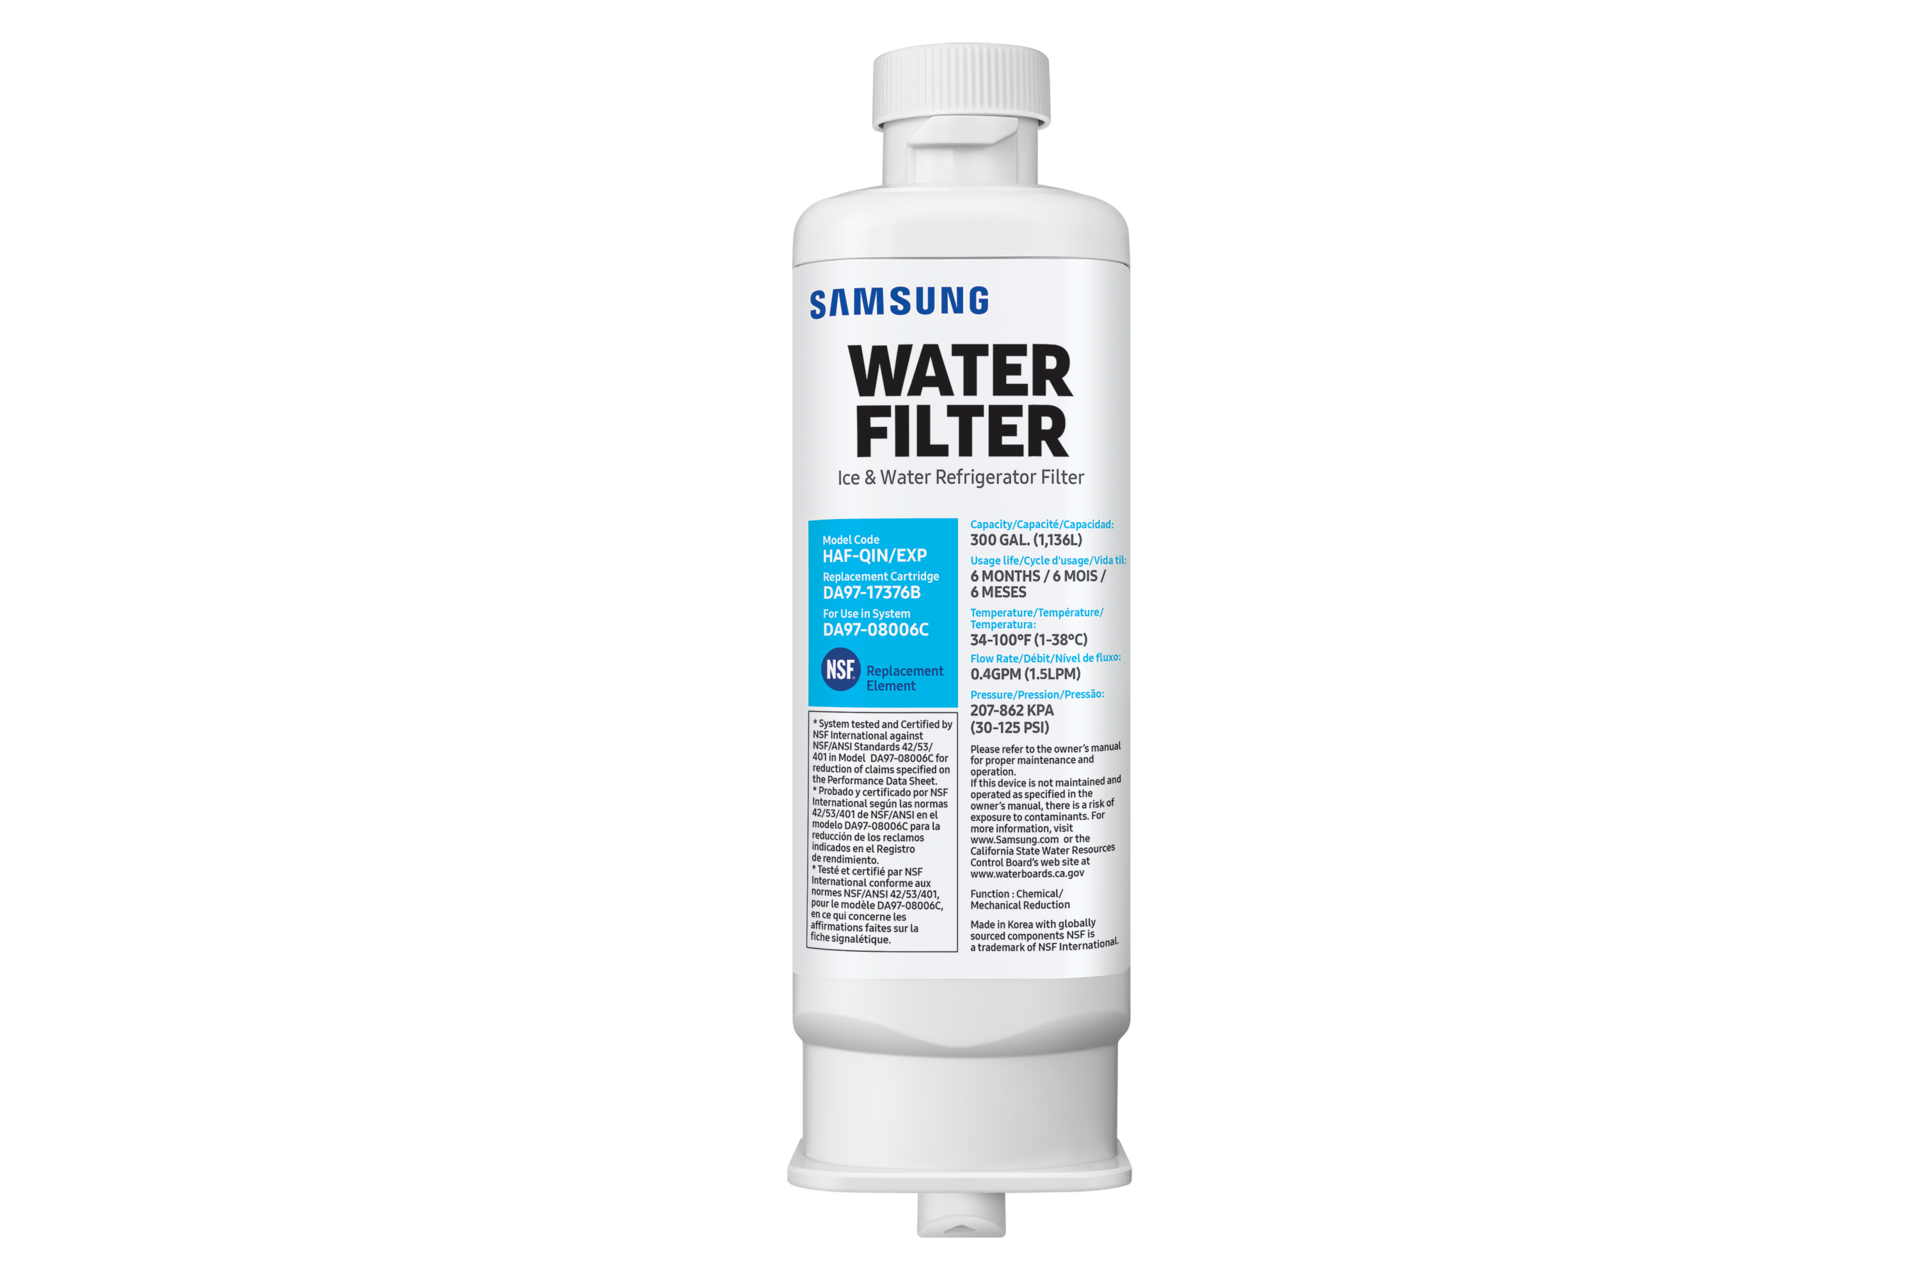 DA29-00003G x1 HAFIN2/EXP Samsung Filtre eau Frigo américain 